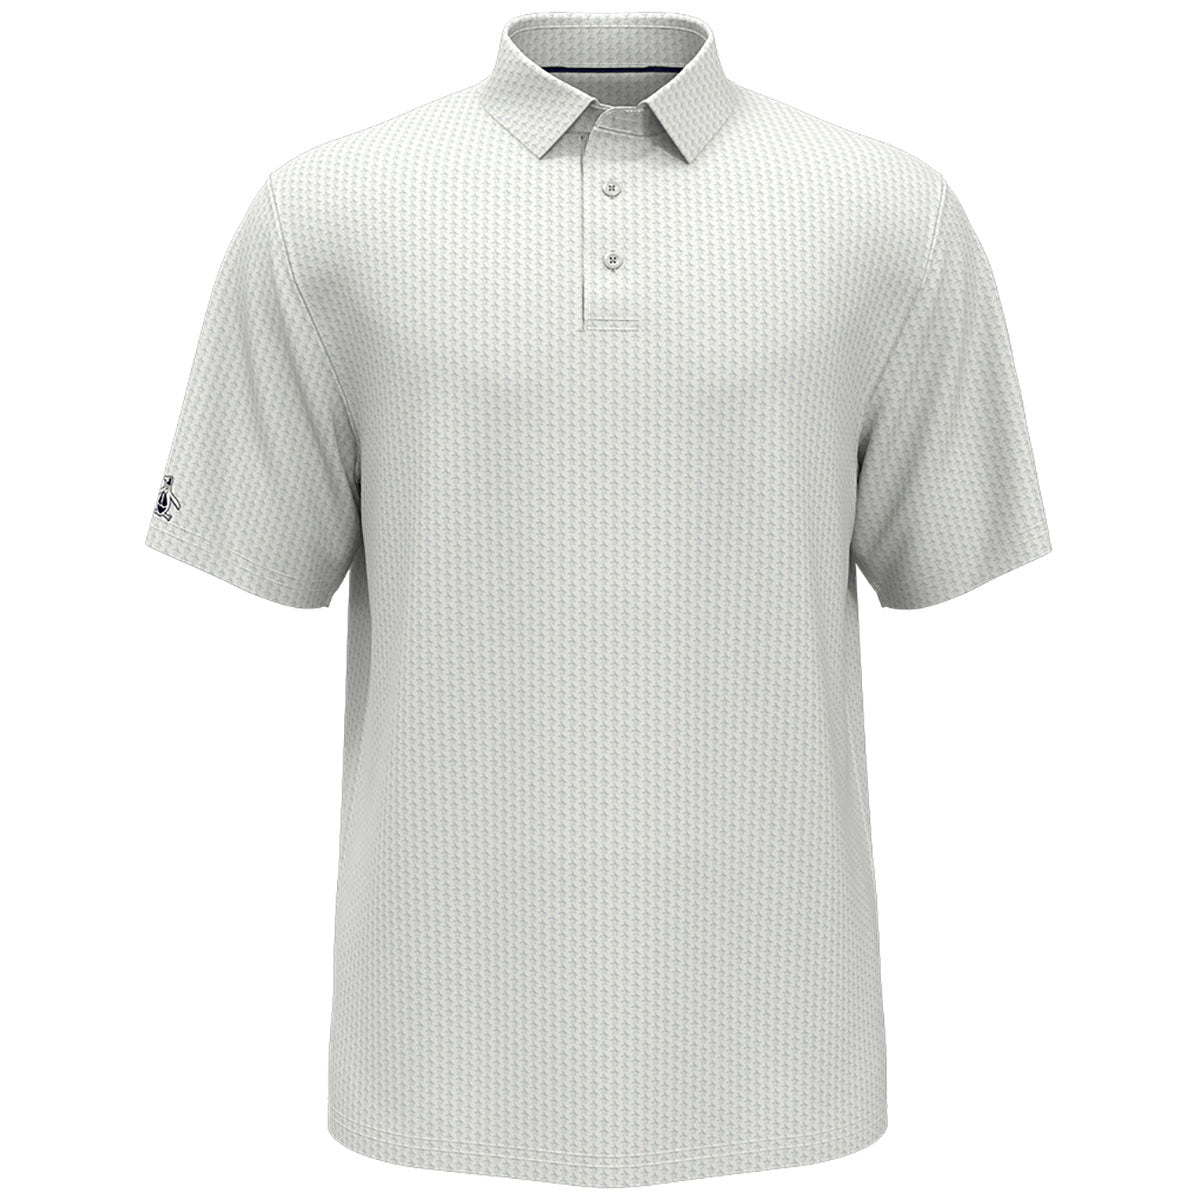 Original Penguin Men's Polo Shirt Size XLT Short Sleeve White